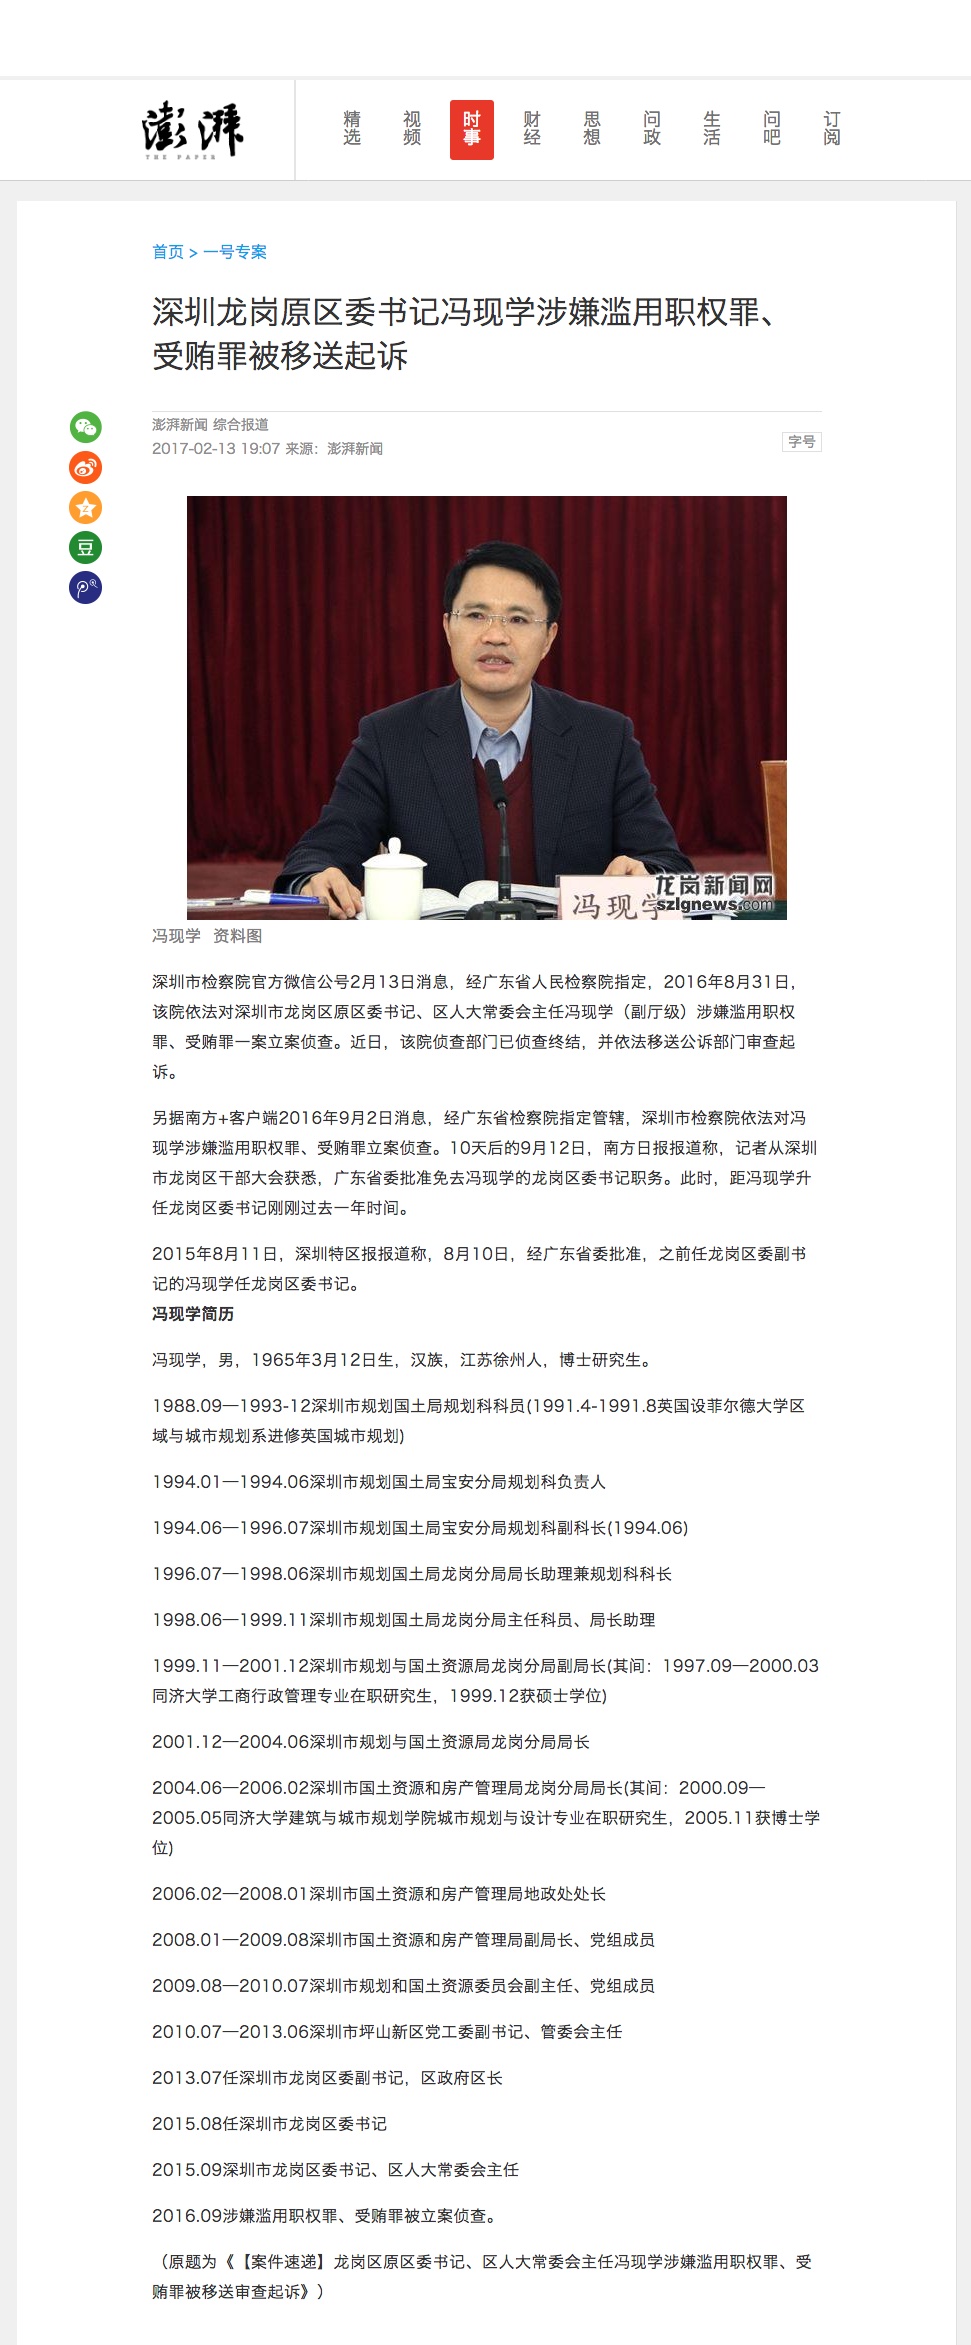 深圳龙岗原区委书记冯现学涉嫌滥用职权罪、受贿罪案